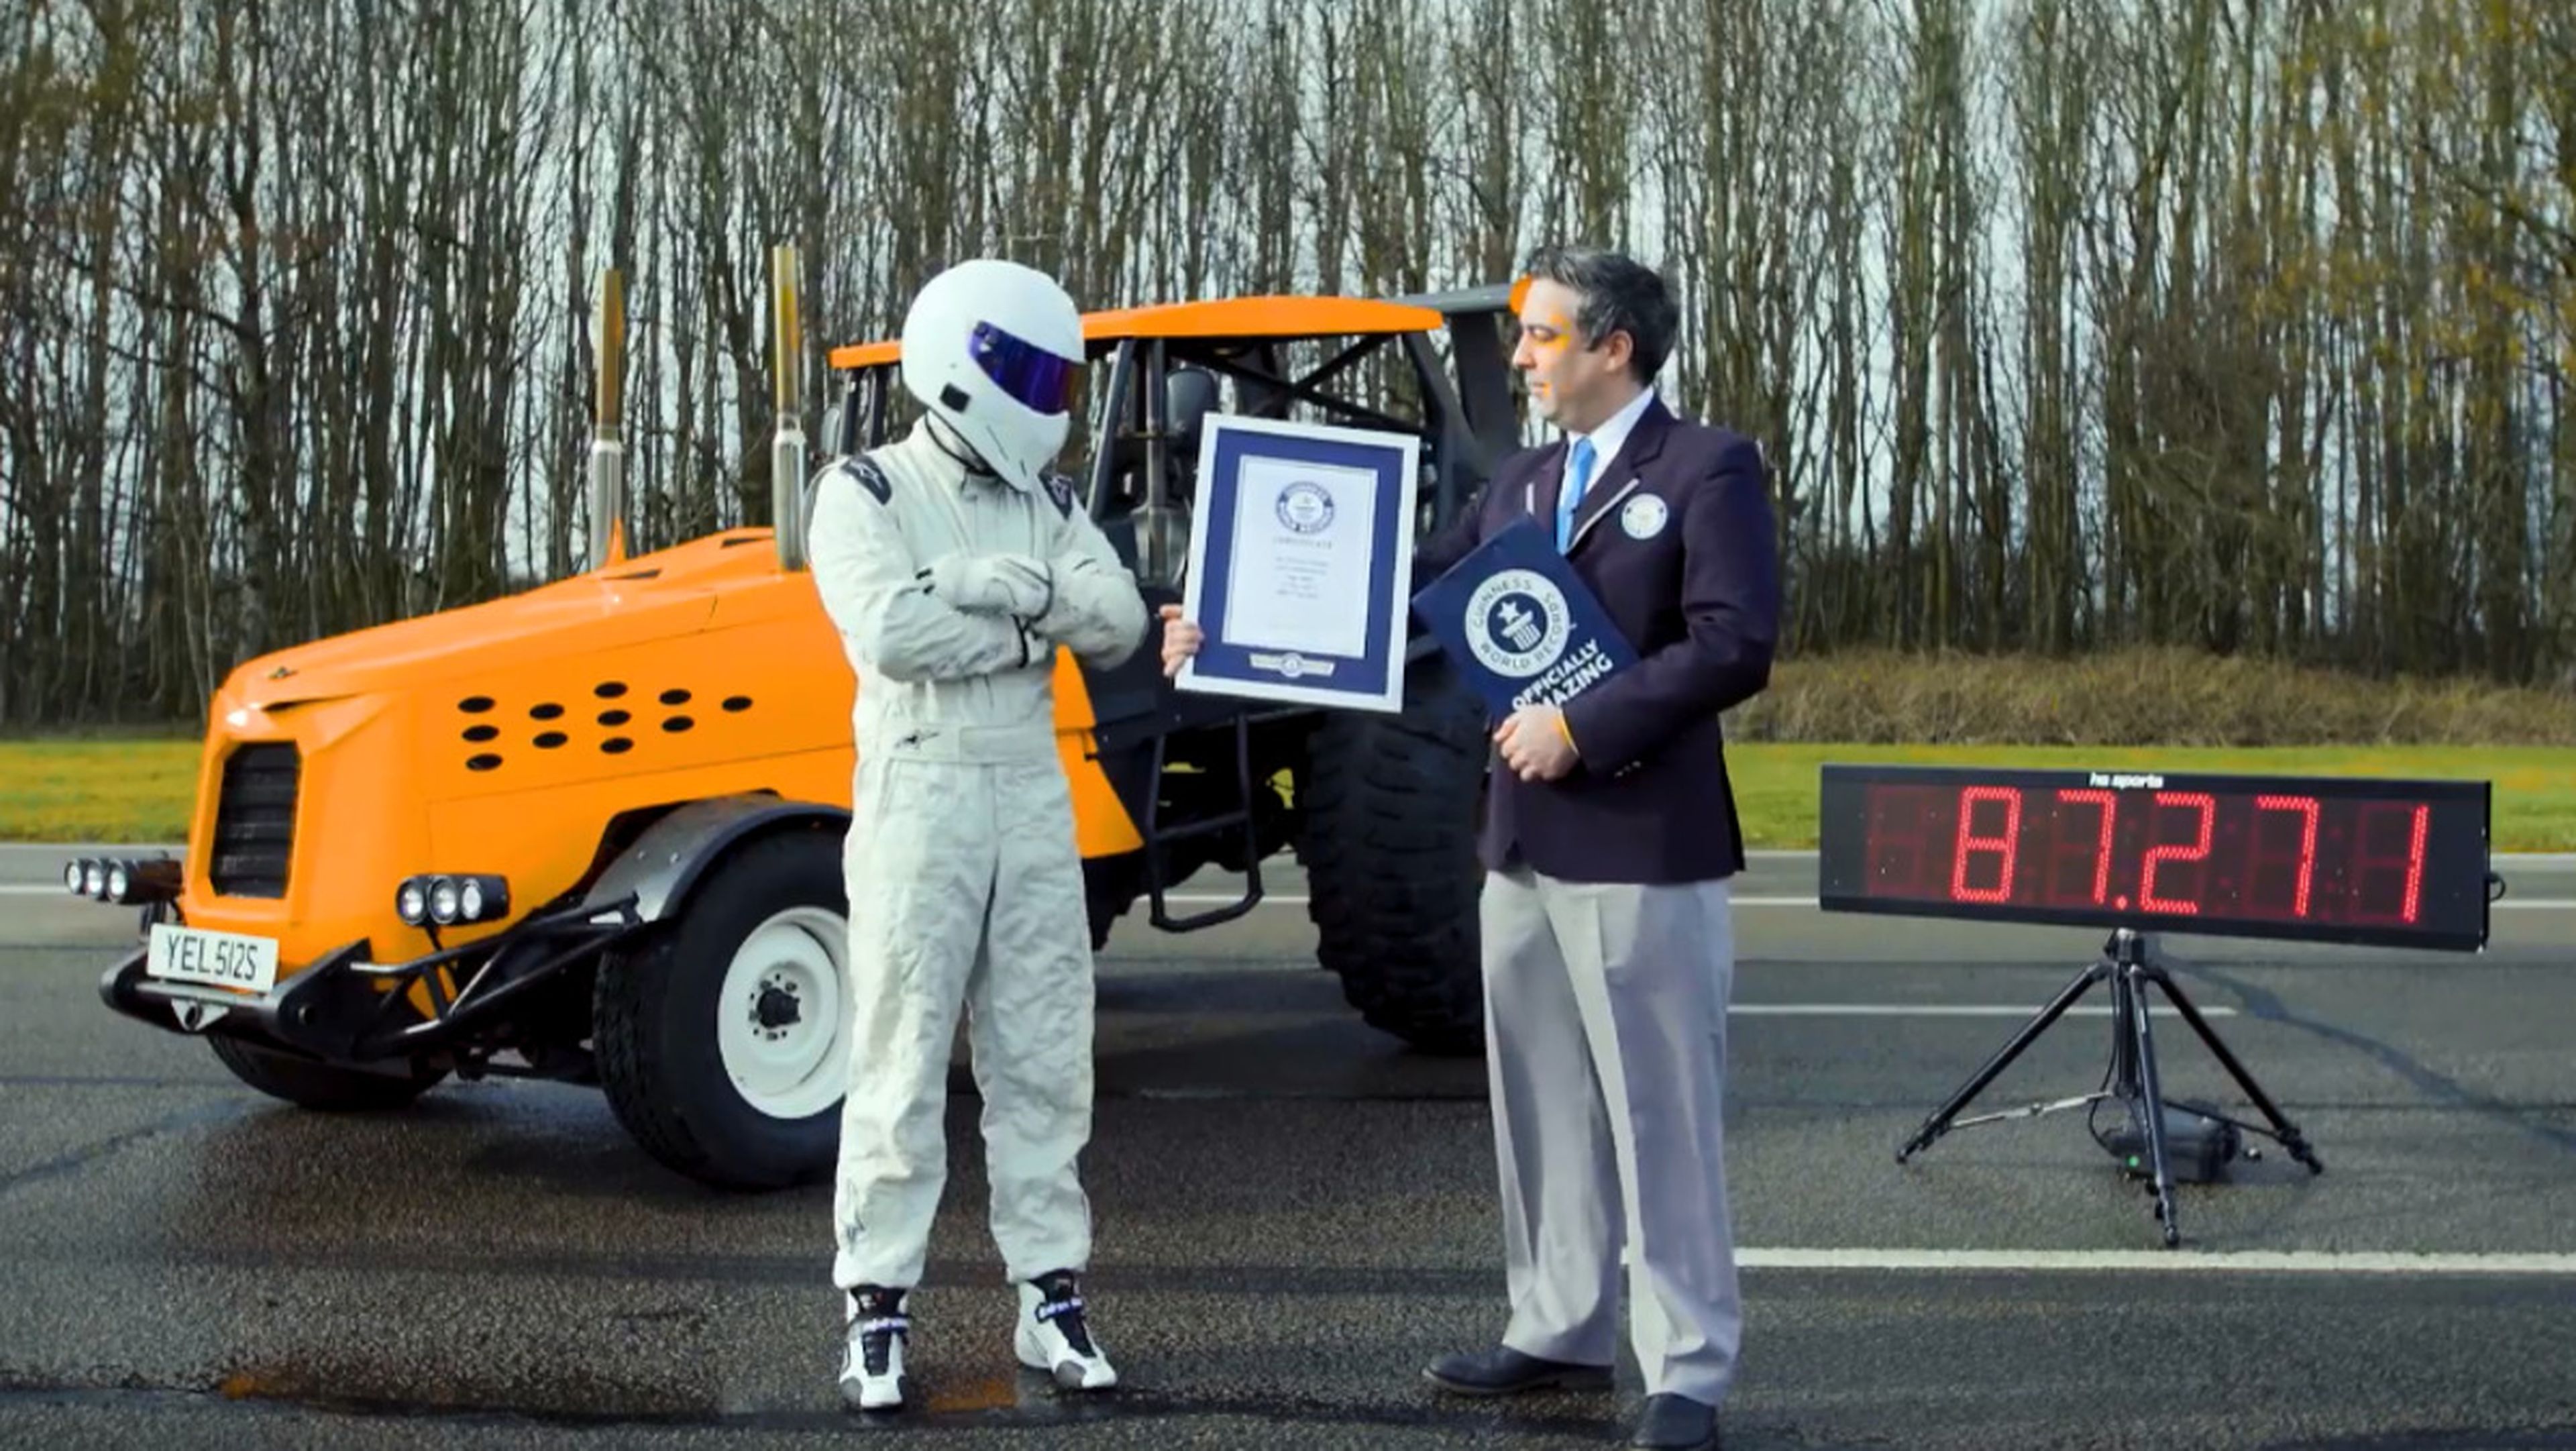 Top Gear bate el Récord Guinness de velocidad con un tractor